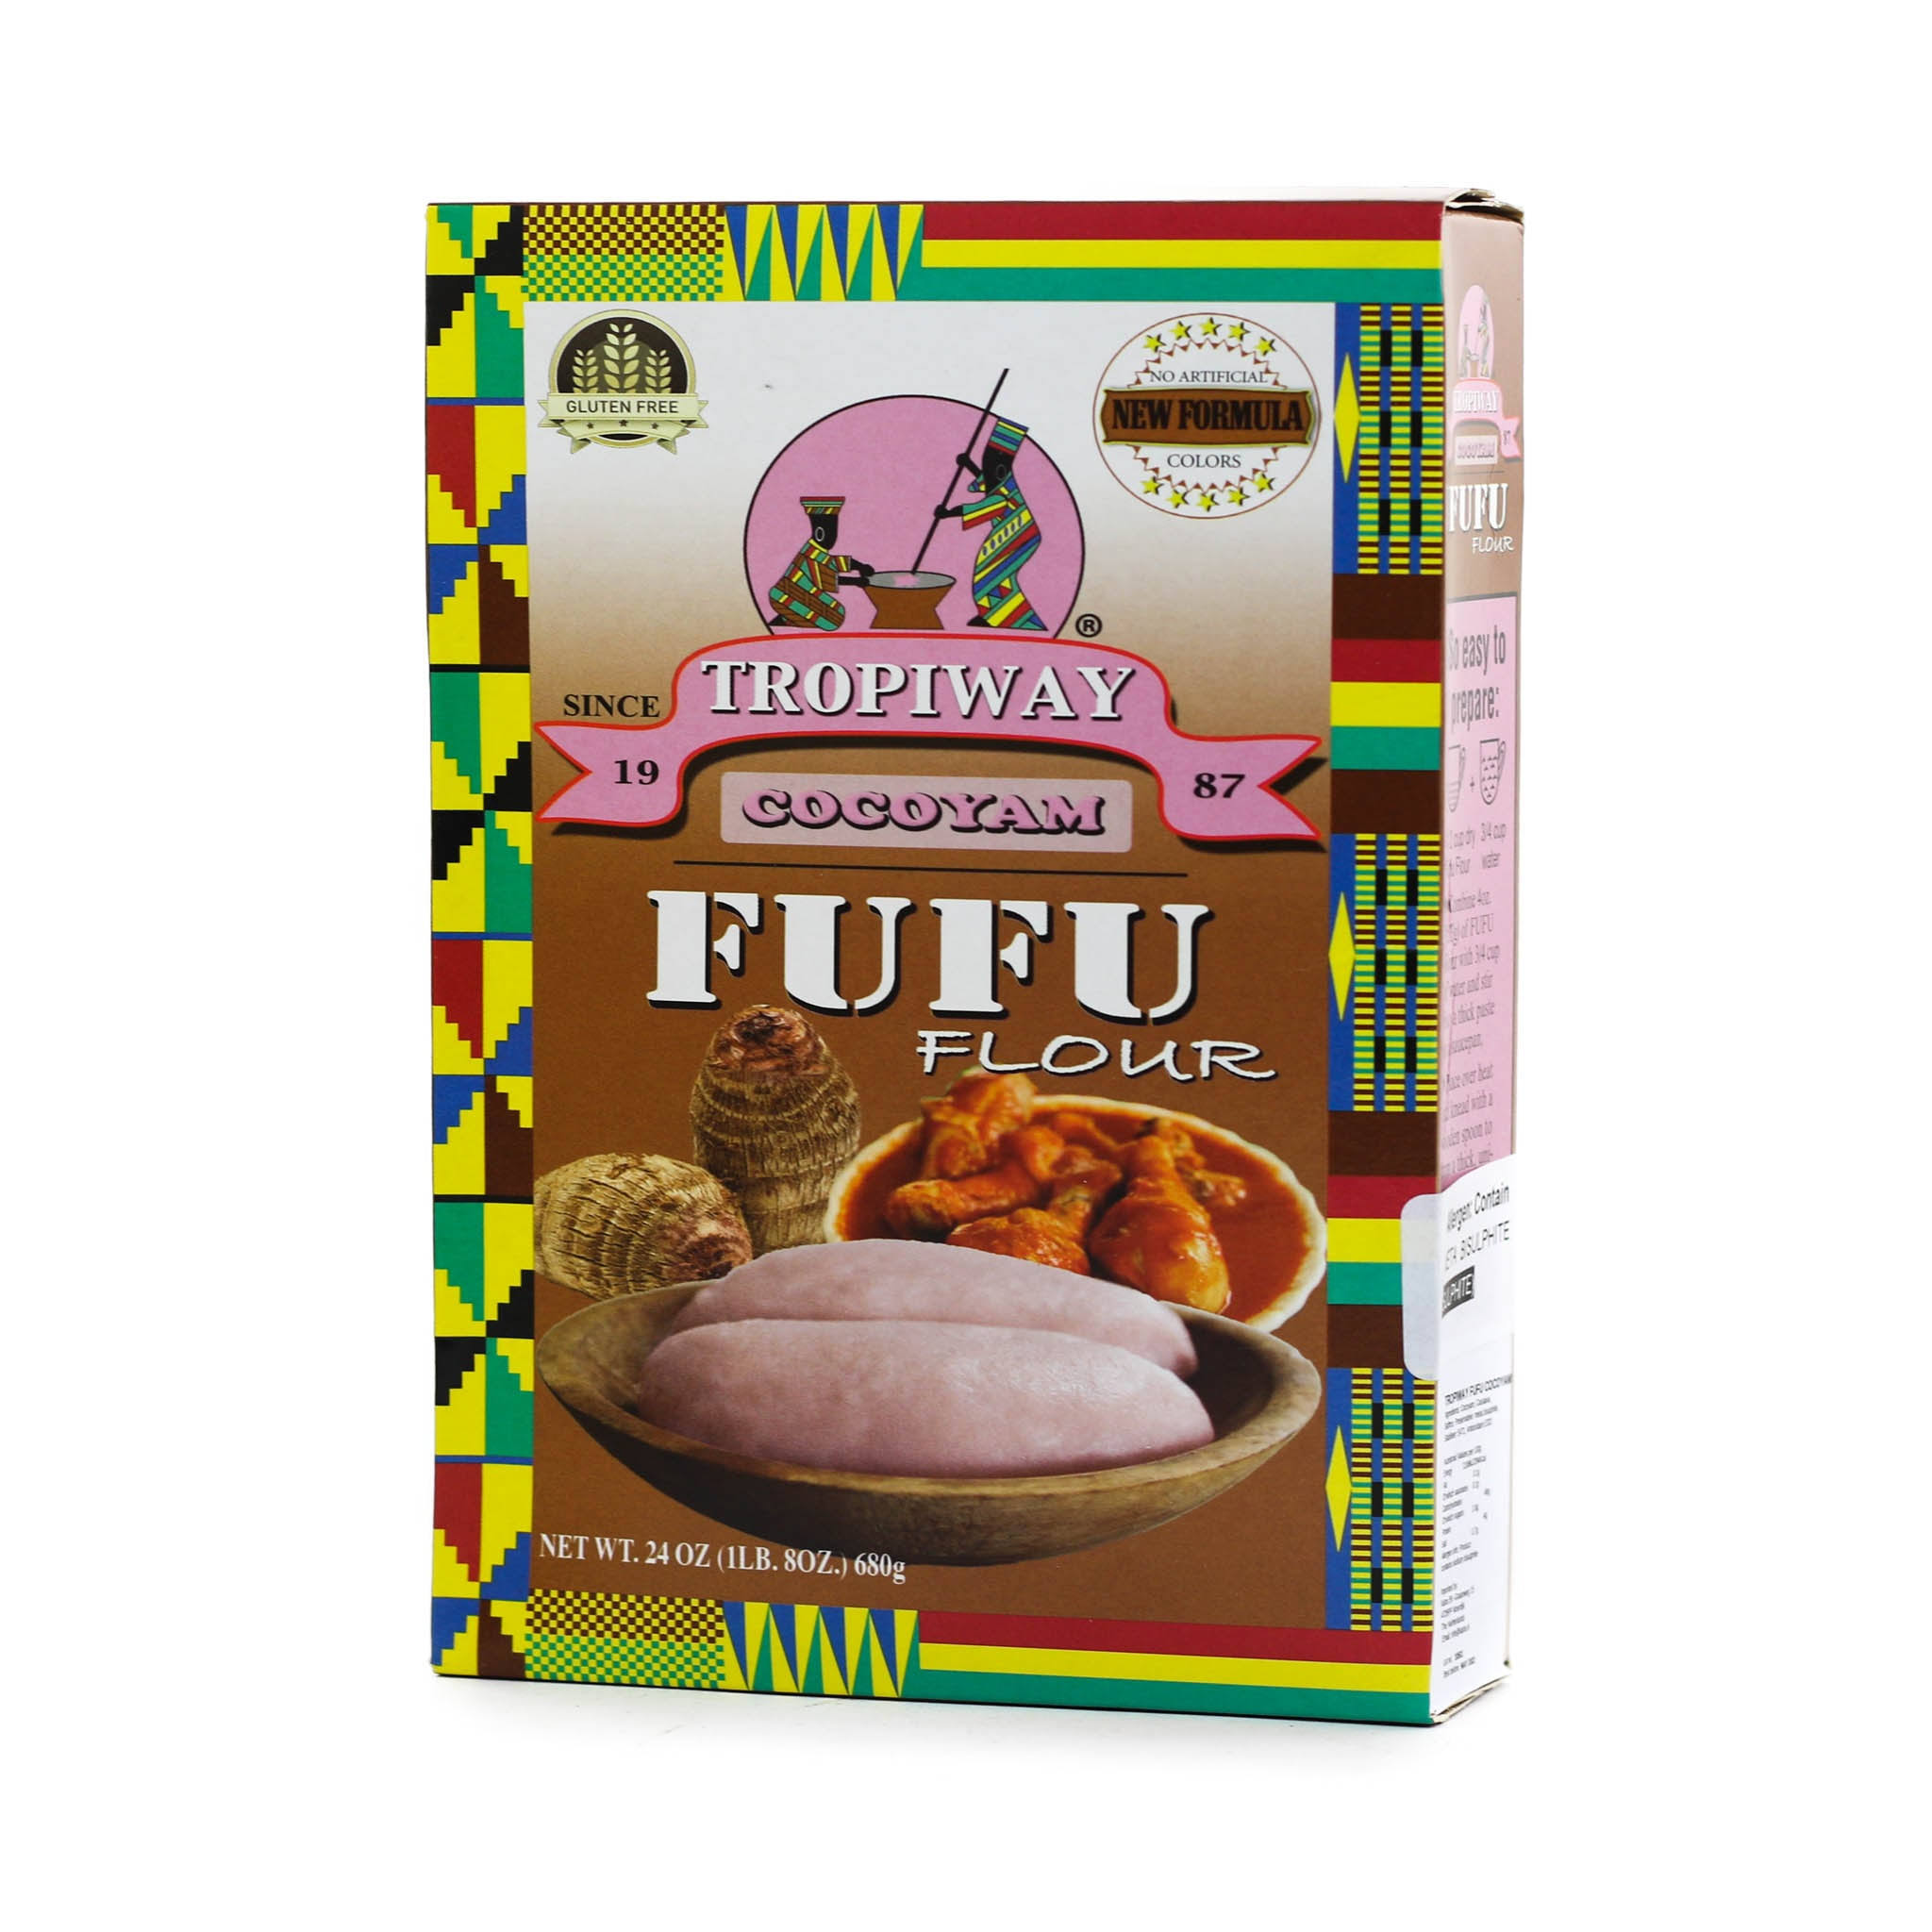 Tropiway Flour, Fufu, Cocoyam - 24 oz